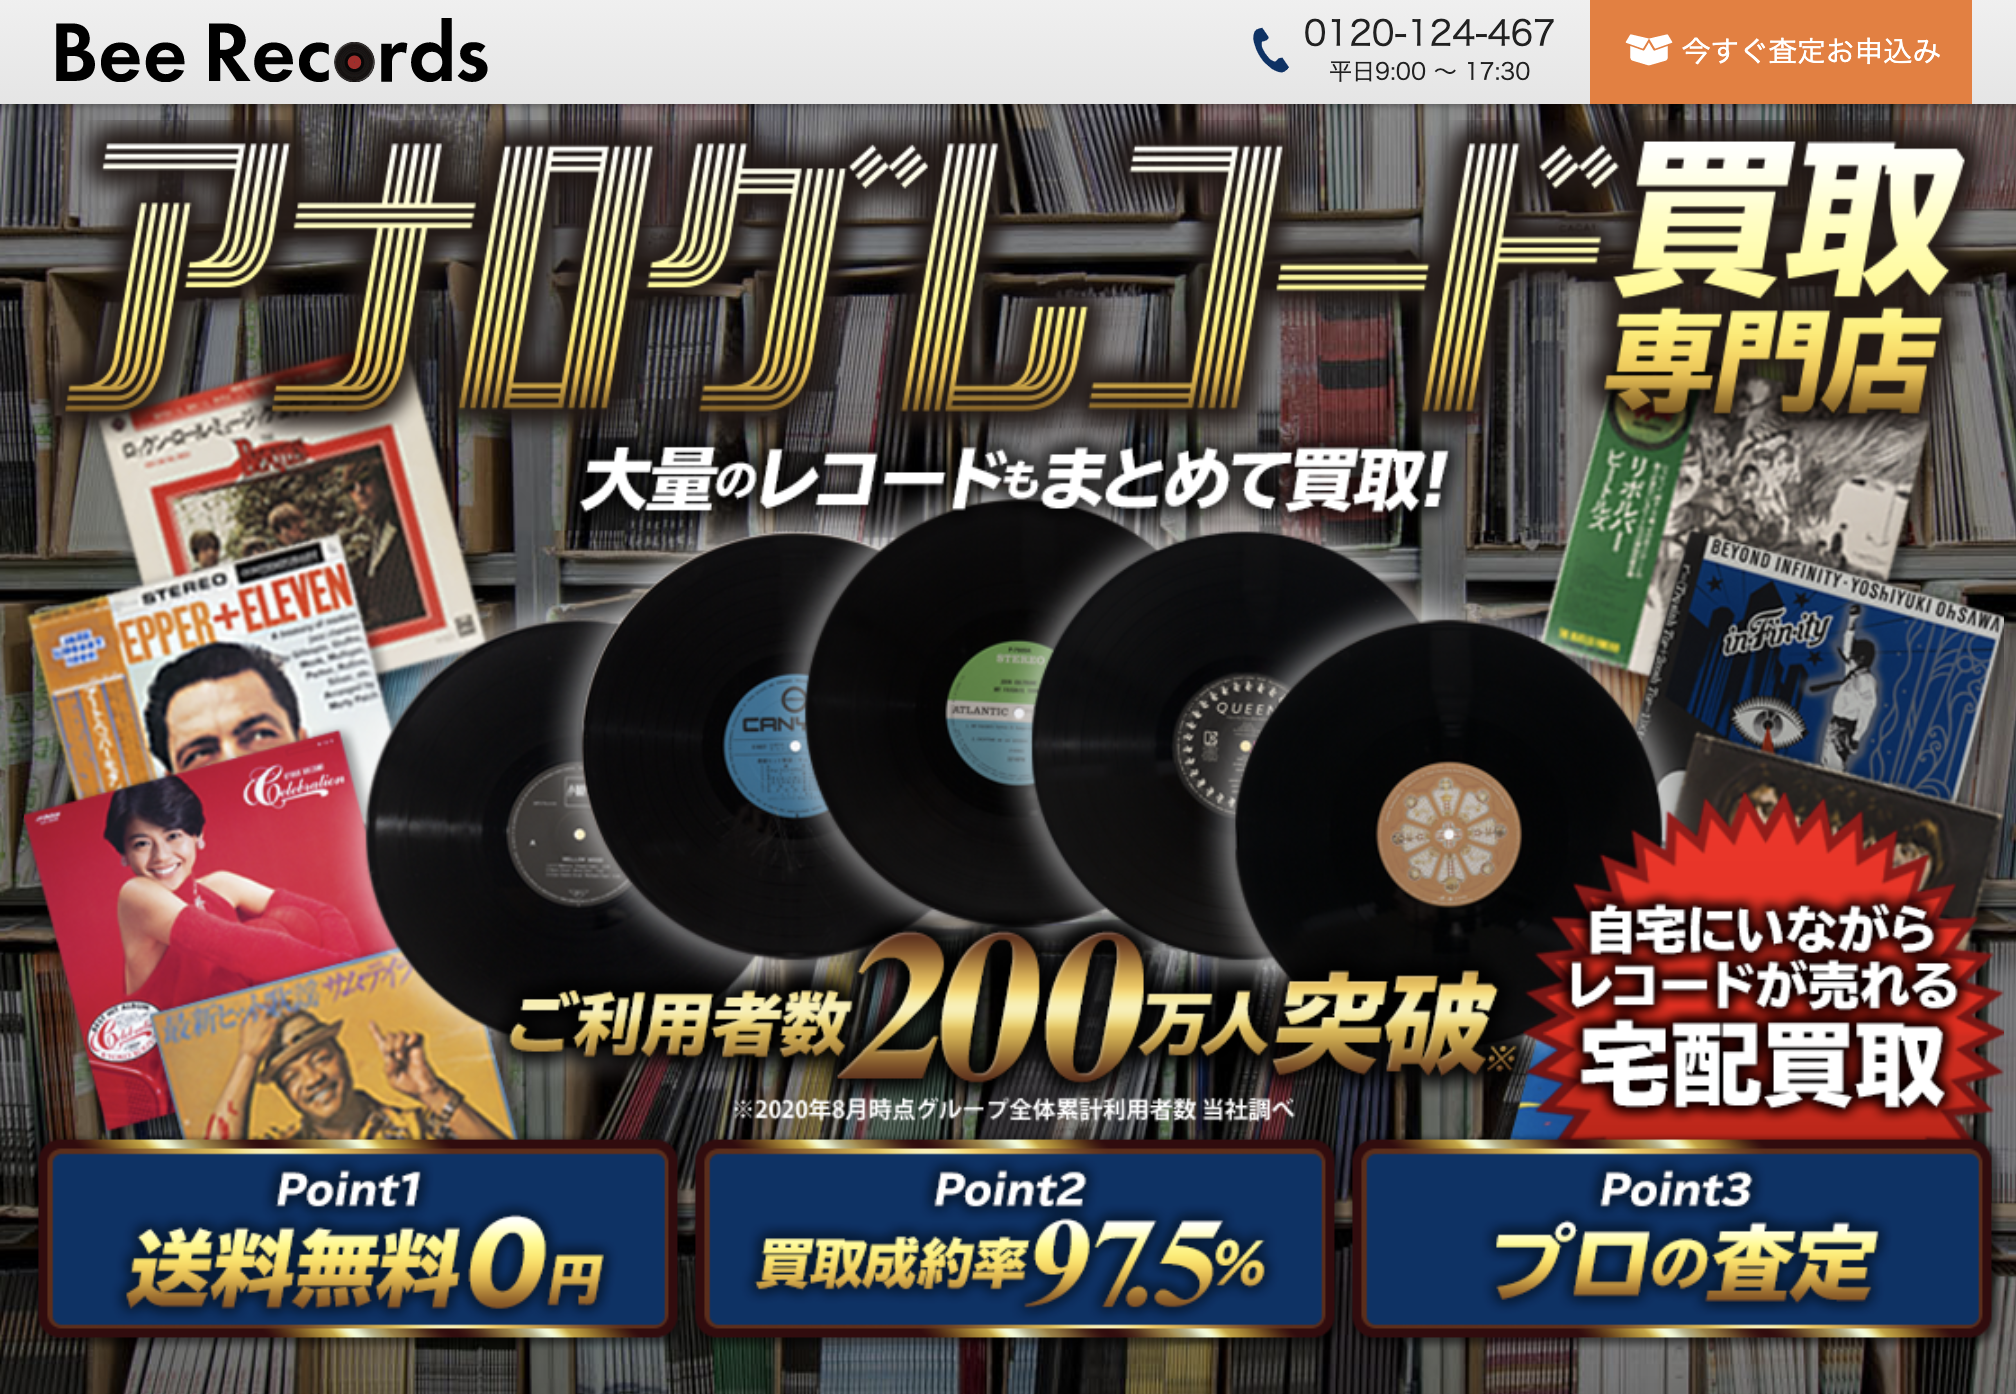 アナログレコード買取専門店BeeRecords(ビーレコード)